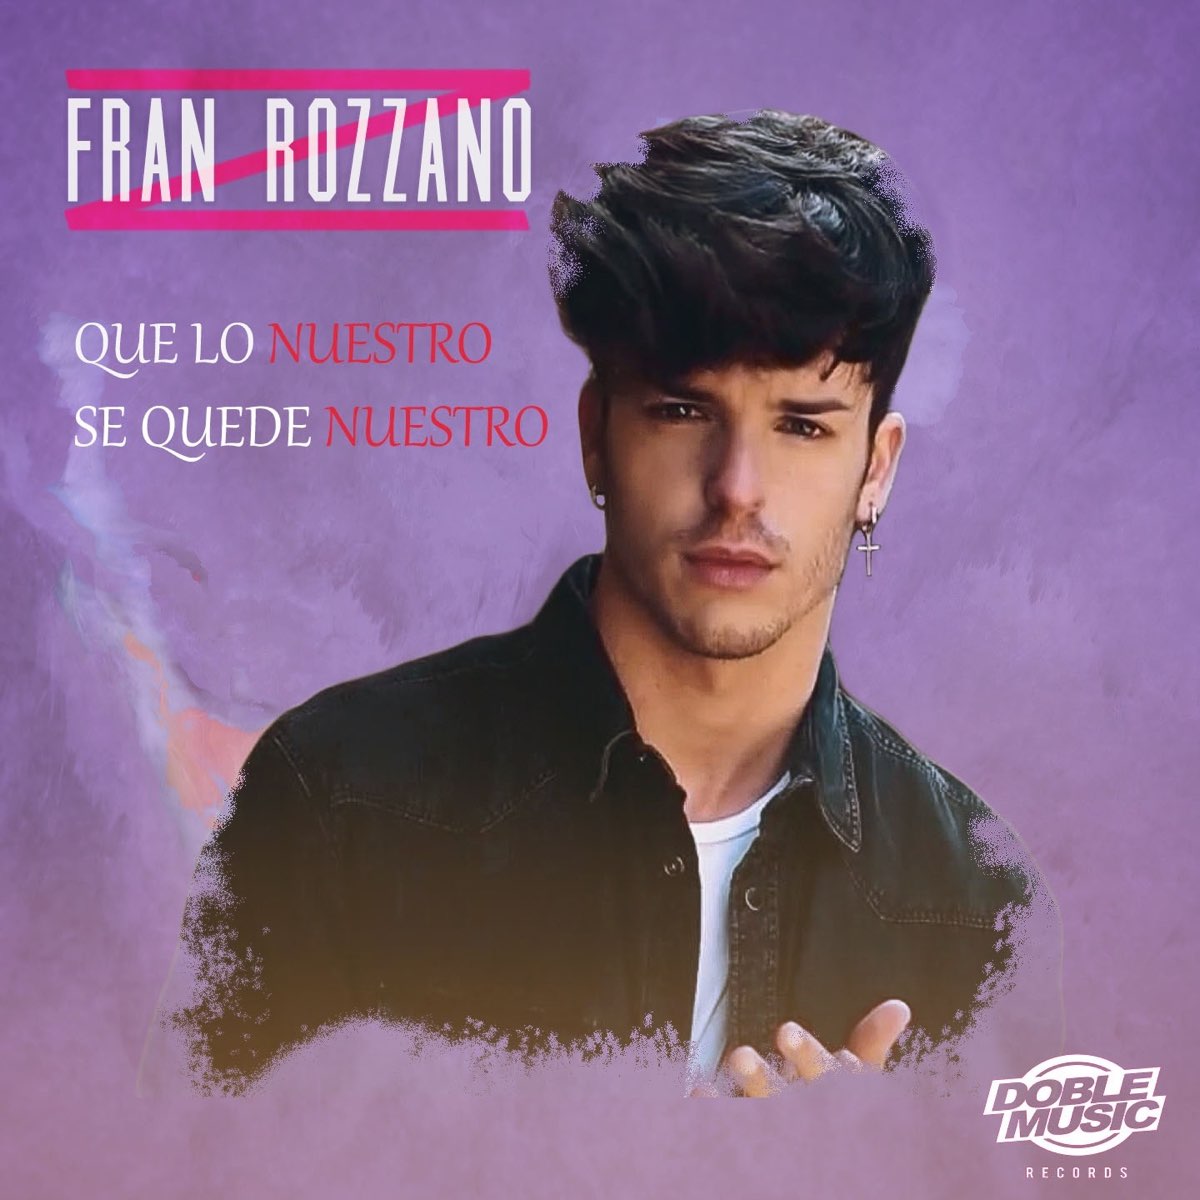 Que Lo Nuestro Se Quede Nuestro Single By Fran Rozzano On Apple Music